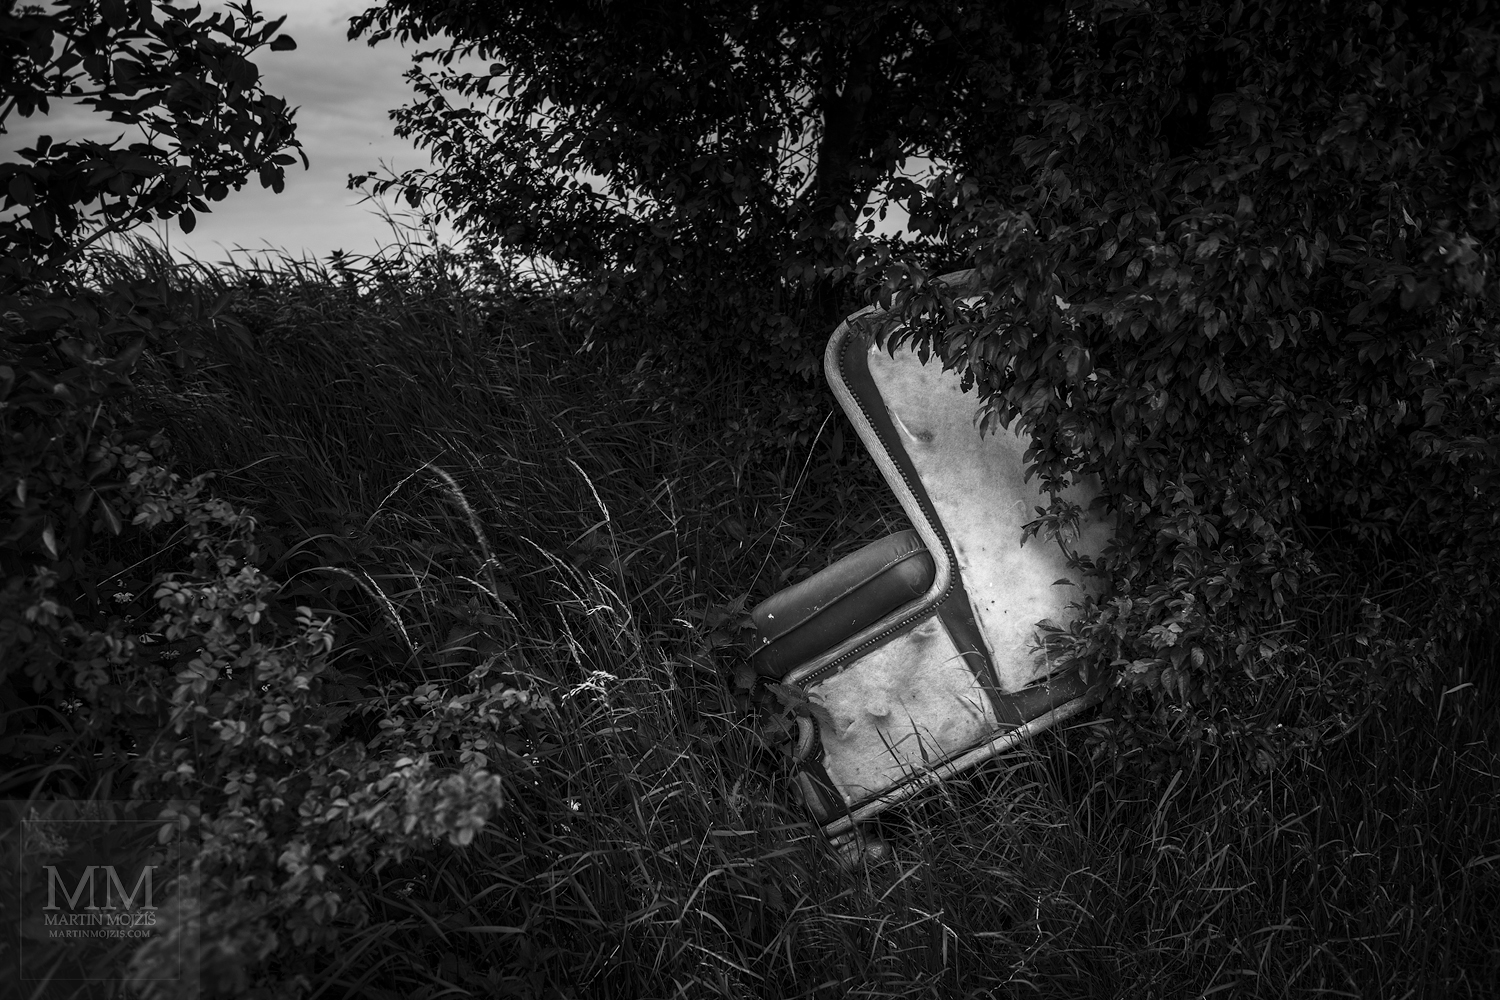 Křeslo v křovinách. Umělecká černobílá fotografie Martina Mojžíše s názvem Z POLE VYSTĚHOVÁN – VÍTEJTE V MÉM DOMĚ V.